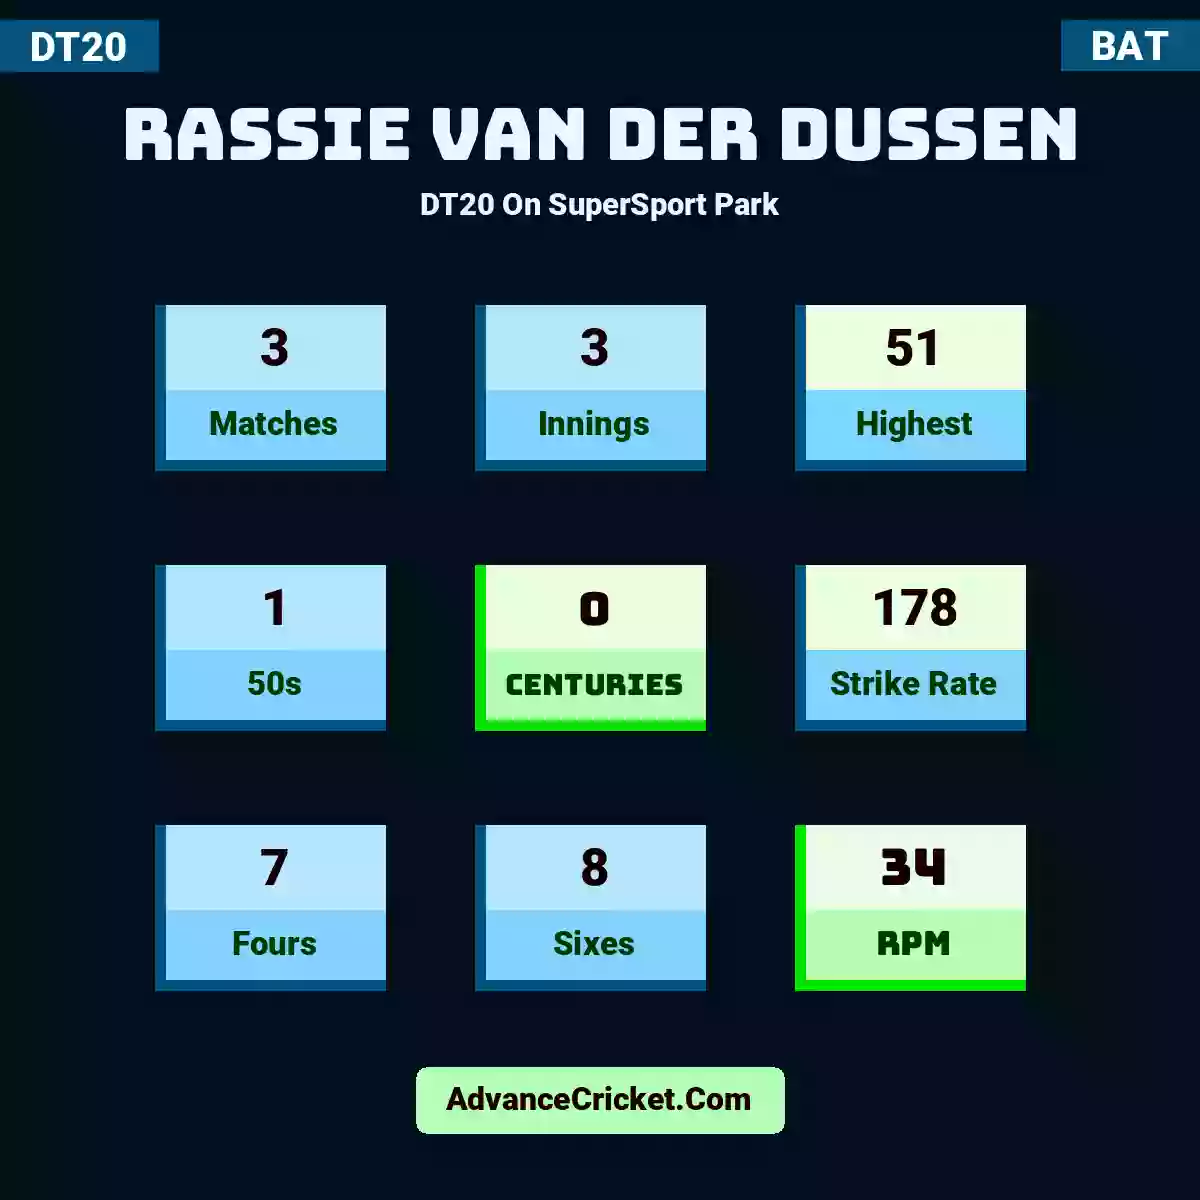 Rassie van der Dussen DT20  On SuperSport Park, Rassie van der Dussen played 3 matches, scored 51 runs as highest, 1 half-centuries, and 0 centuries, with a strike rate of 178. R.Dussen hit 7 fours and 8 sixes, with an RPM of 34.